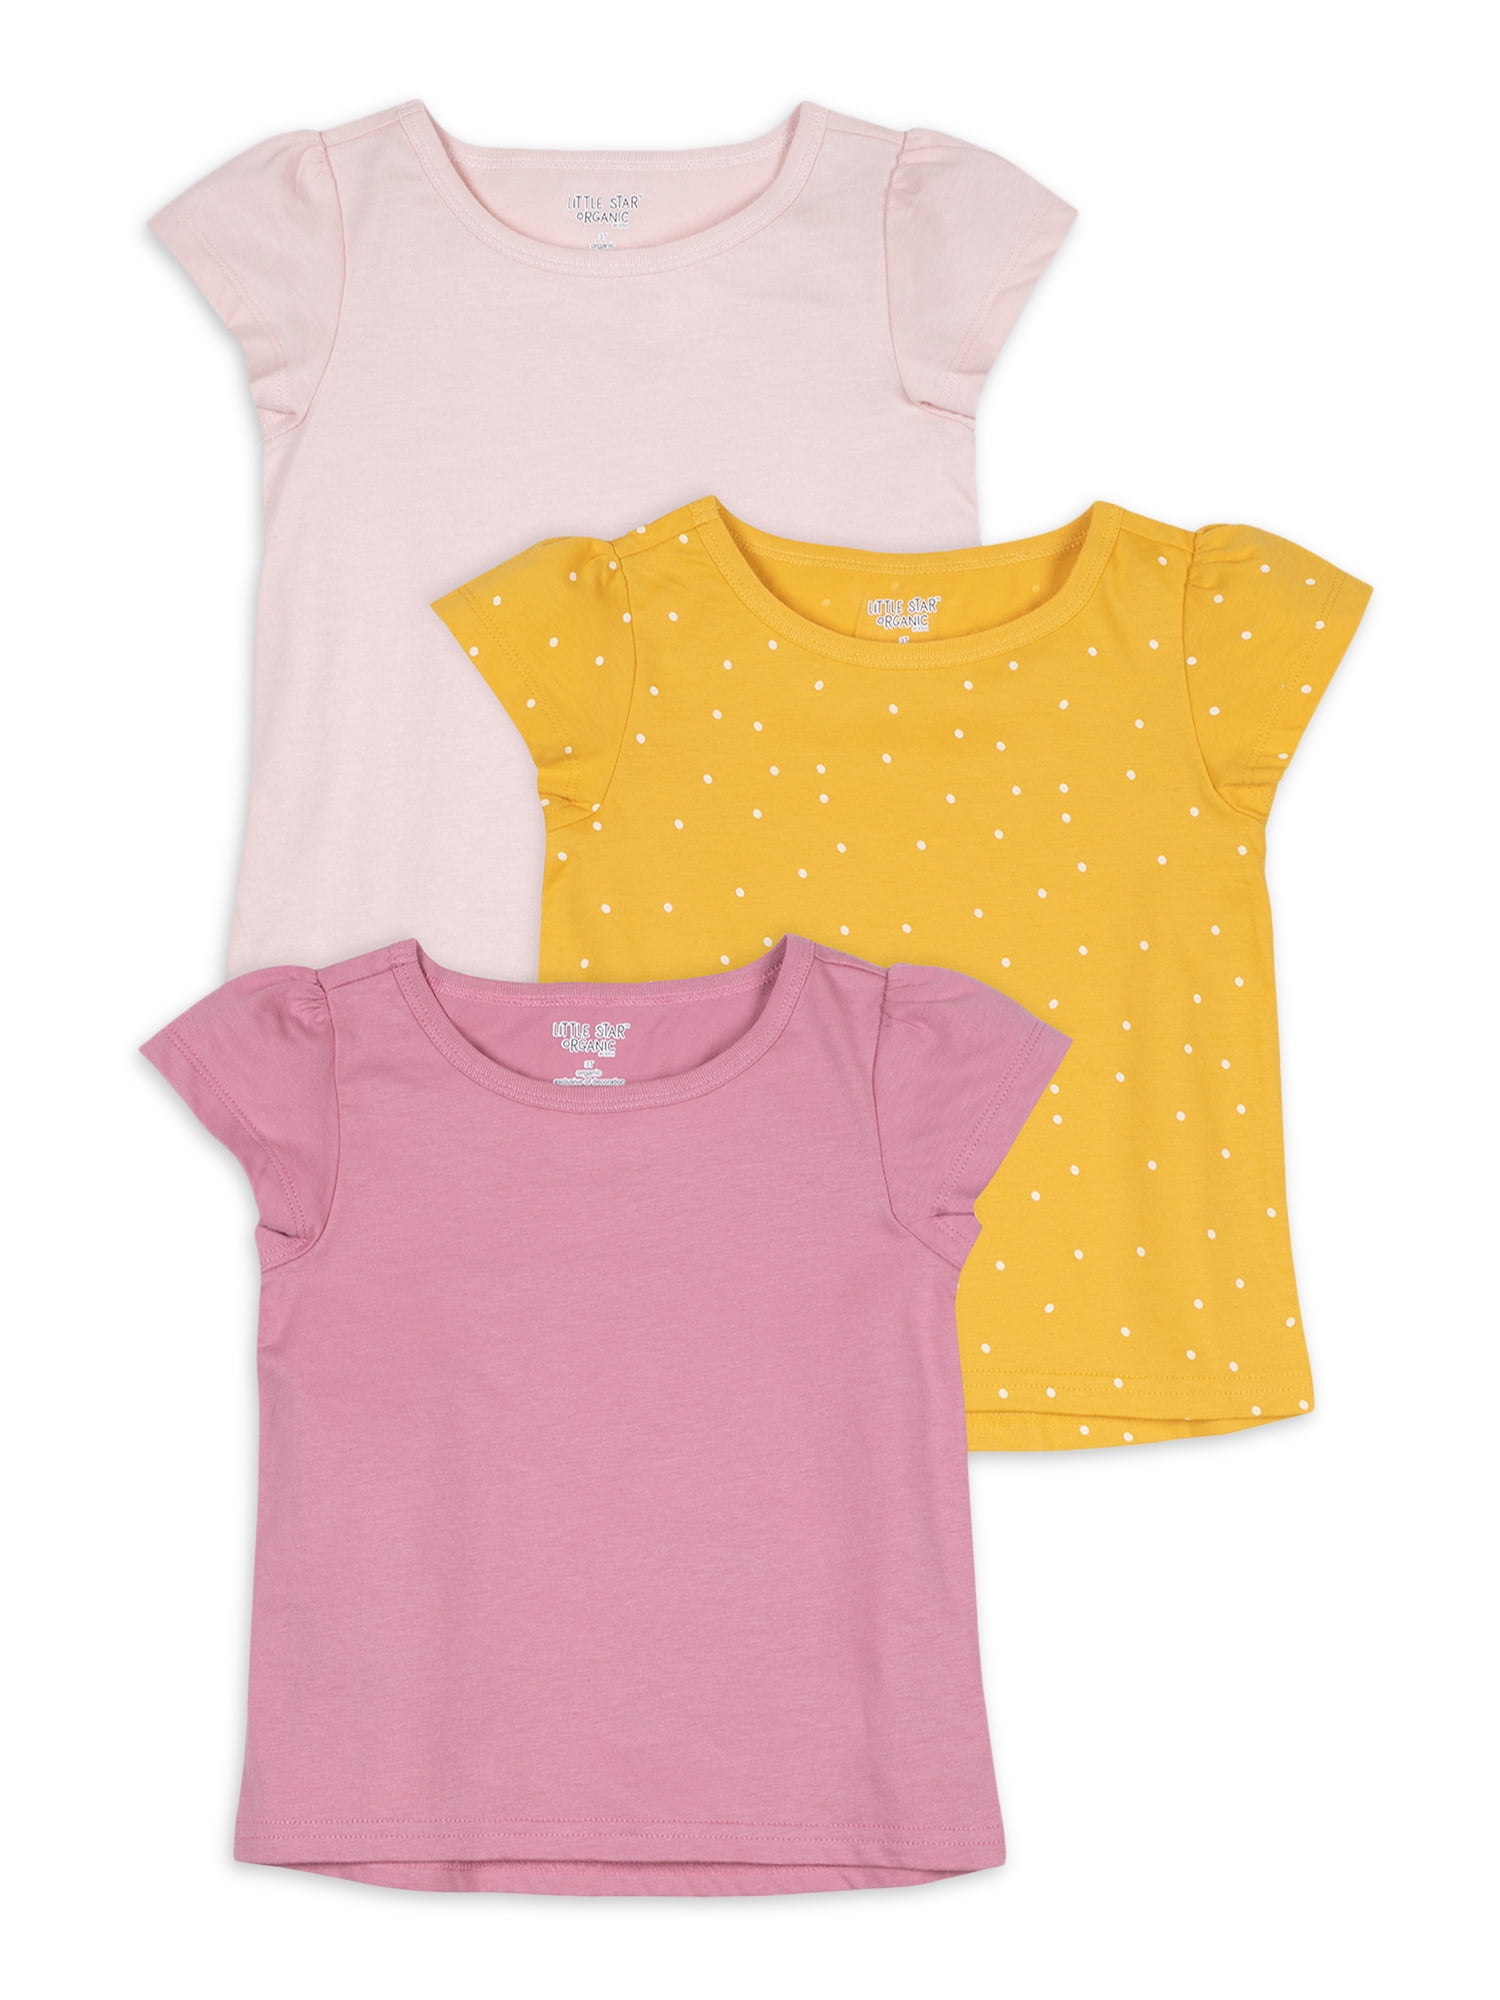 6yrs Girls Next Pink Yellow Top T shirt AGE 4yrs 5yrs 7yrs 